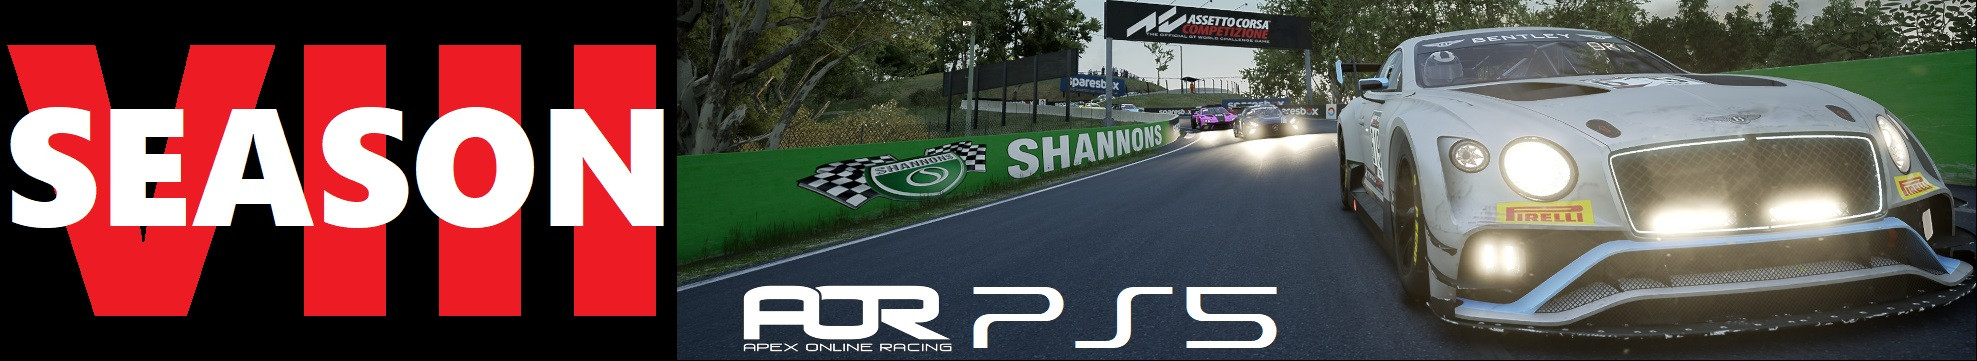 PS Assetto Corsa Competizione League PS5 GT3 CHAMPIONSHIP SEASON 8